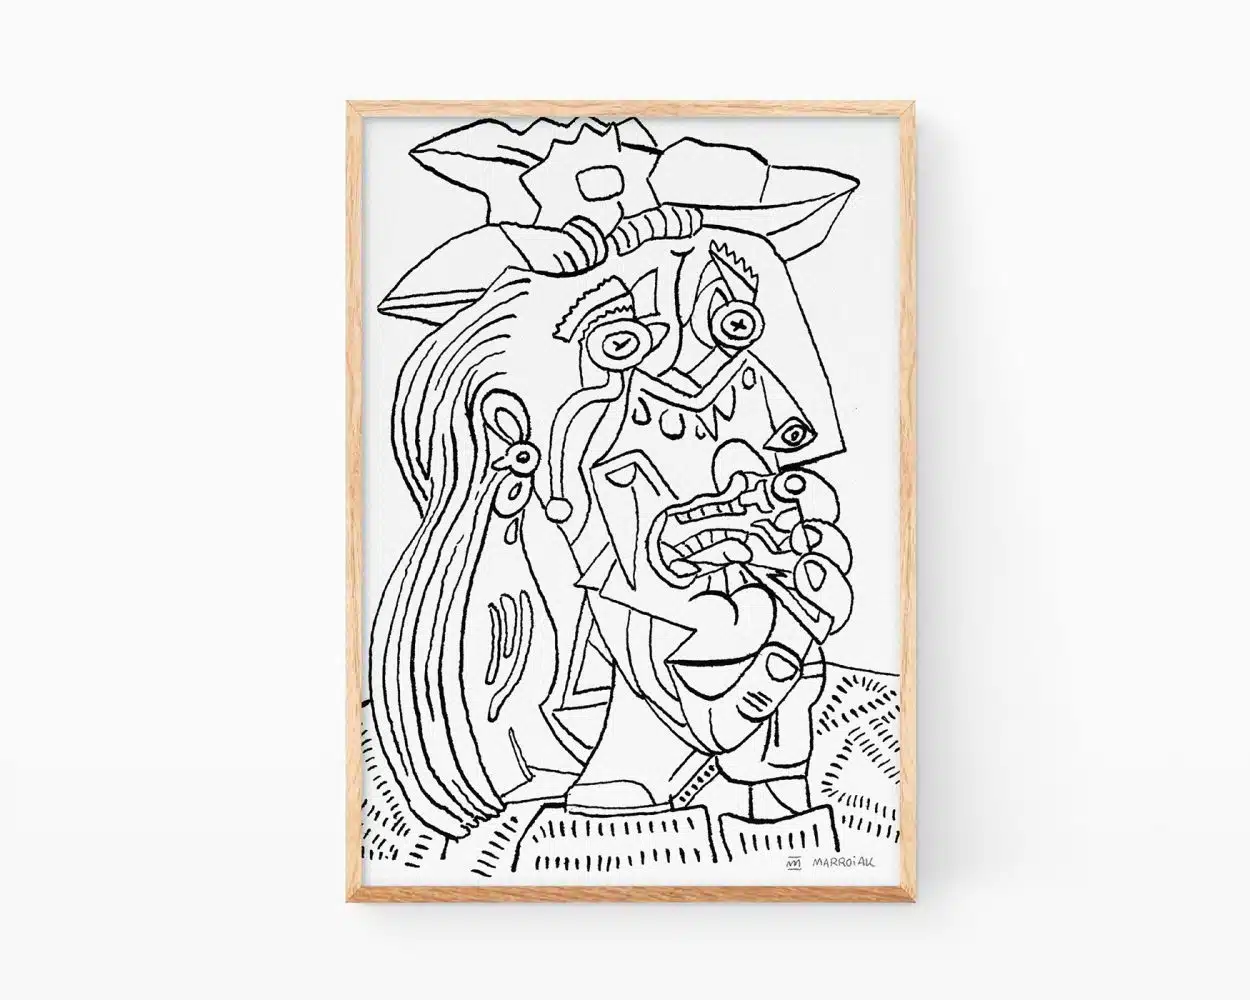 Cuadros de Pablo Picasso. Lámina con una ilustración en blanco y negro de La mujer que llora. Prints para decoración cubista, moderna y de estilo line art minimalista.